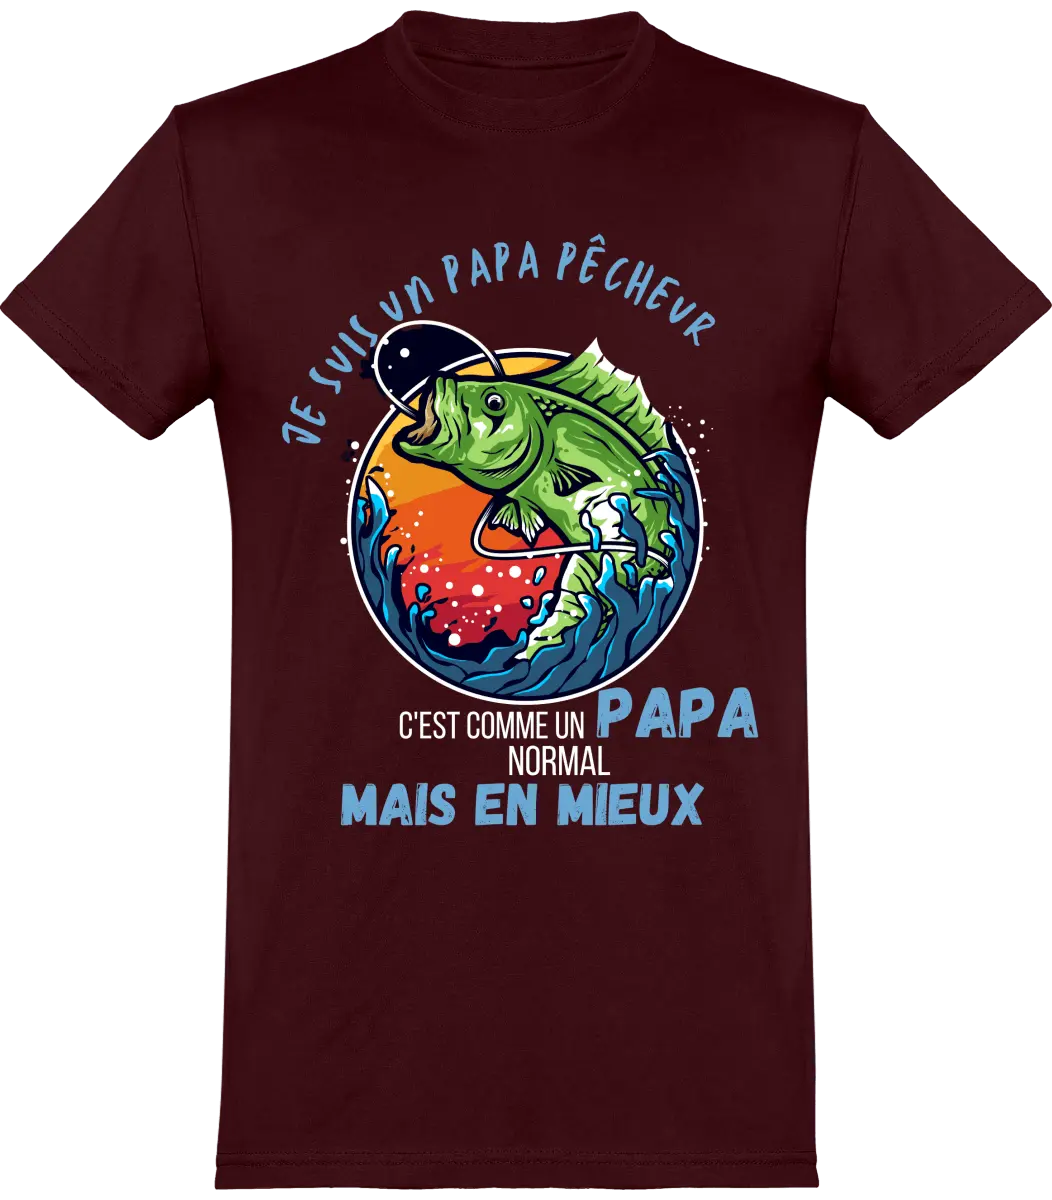 T-shirt pêcheur "je suis un papa pêcheur c'est comme un papap normal mais en mieux" | Mixte - French Humour